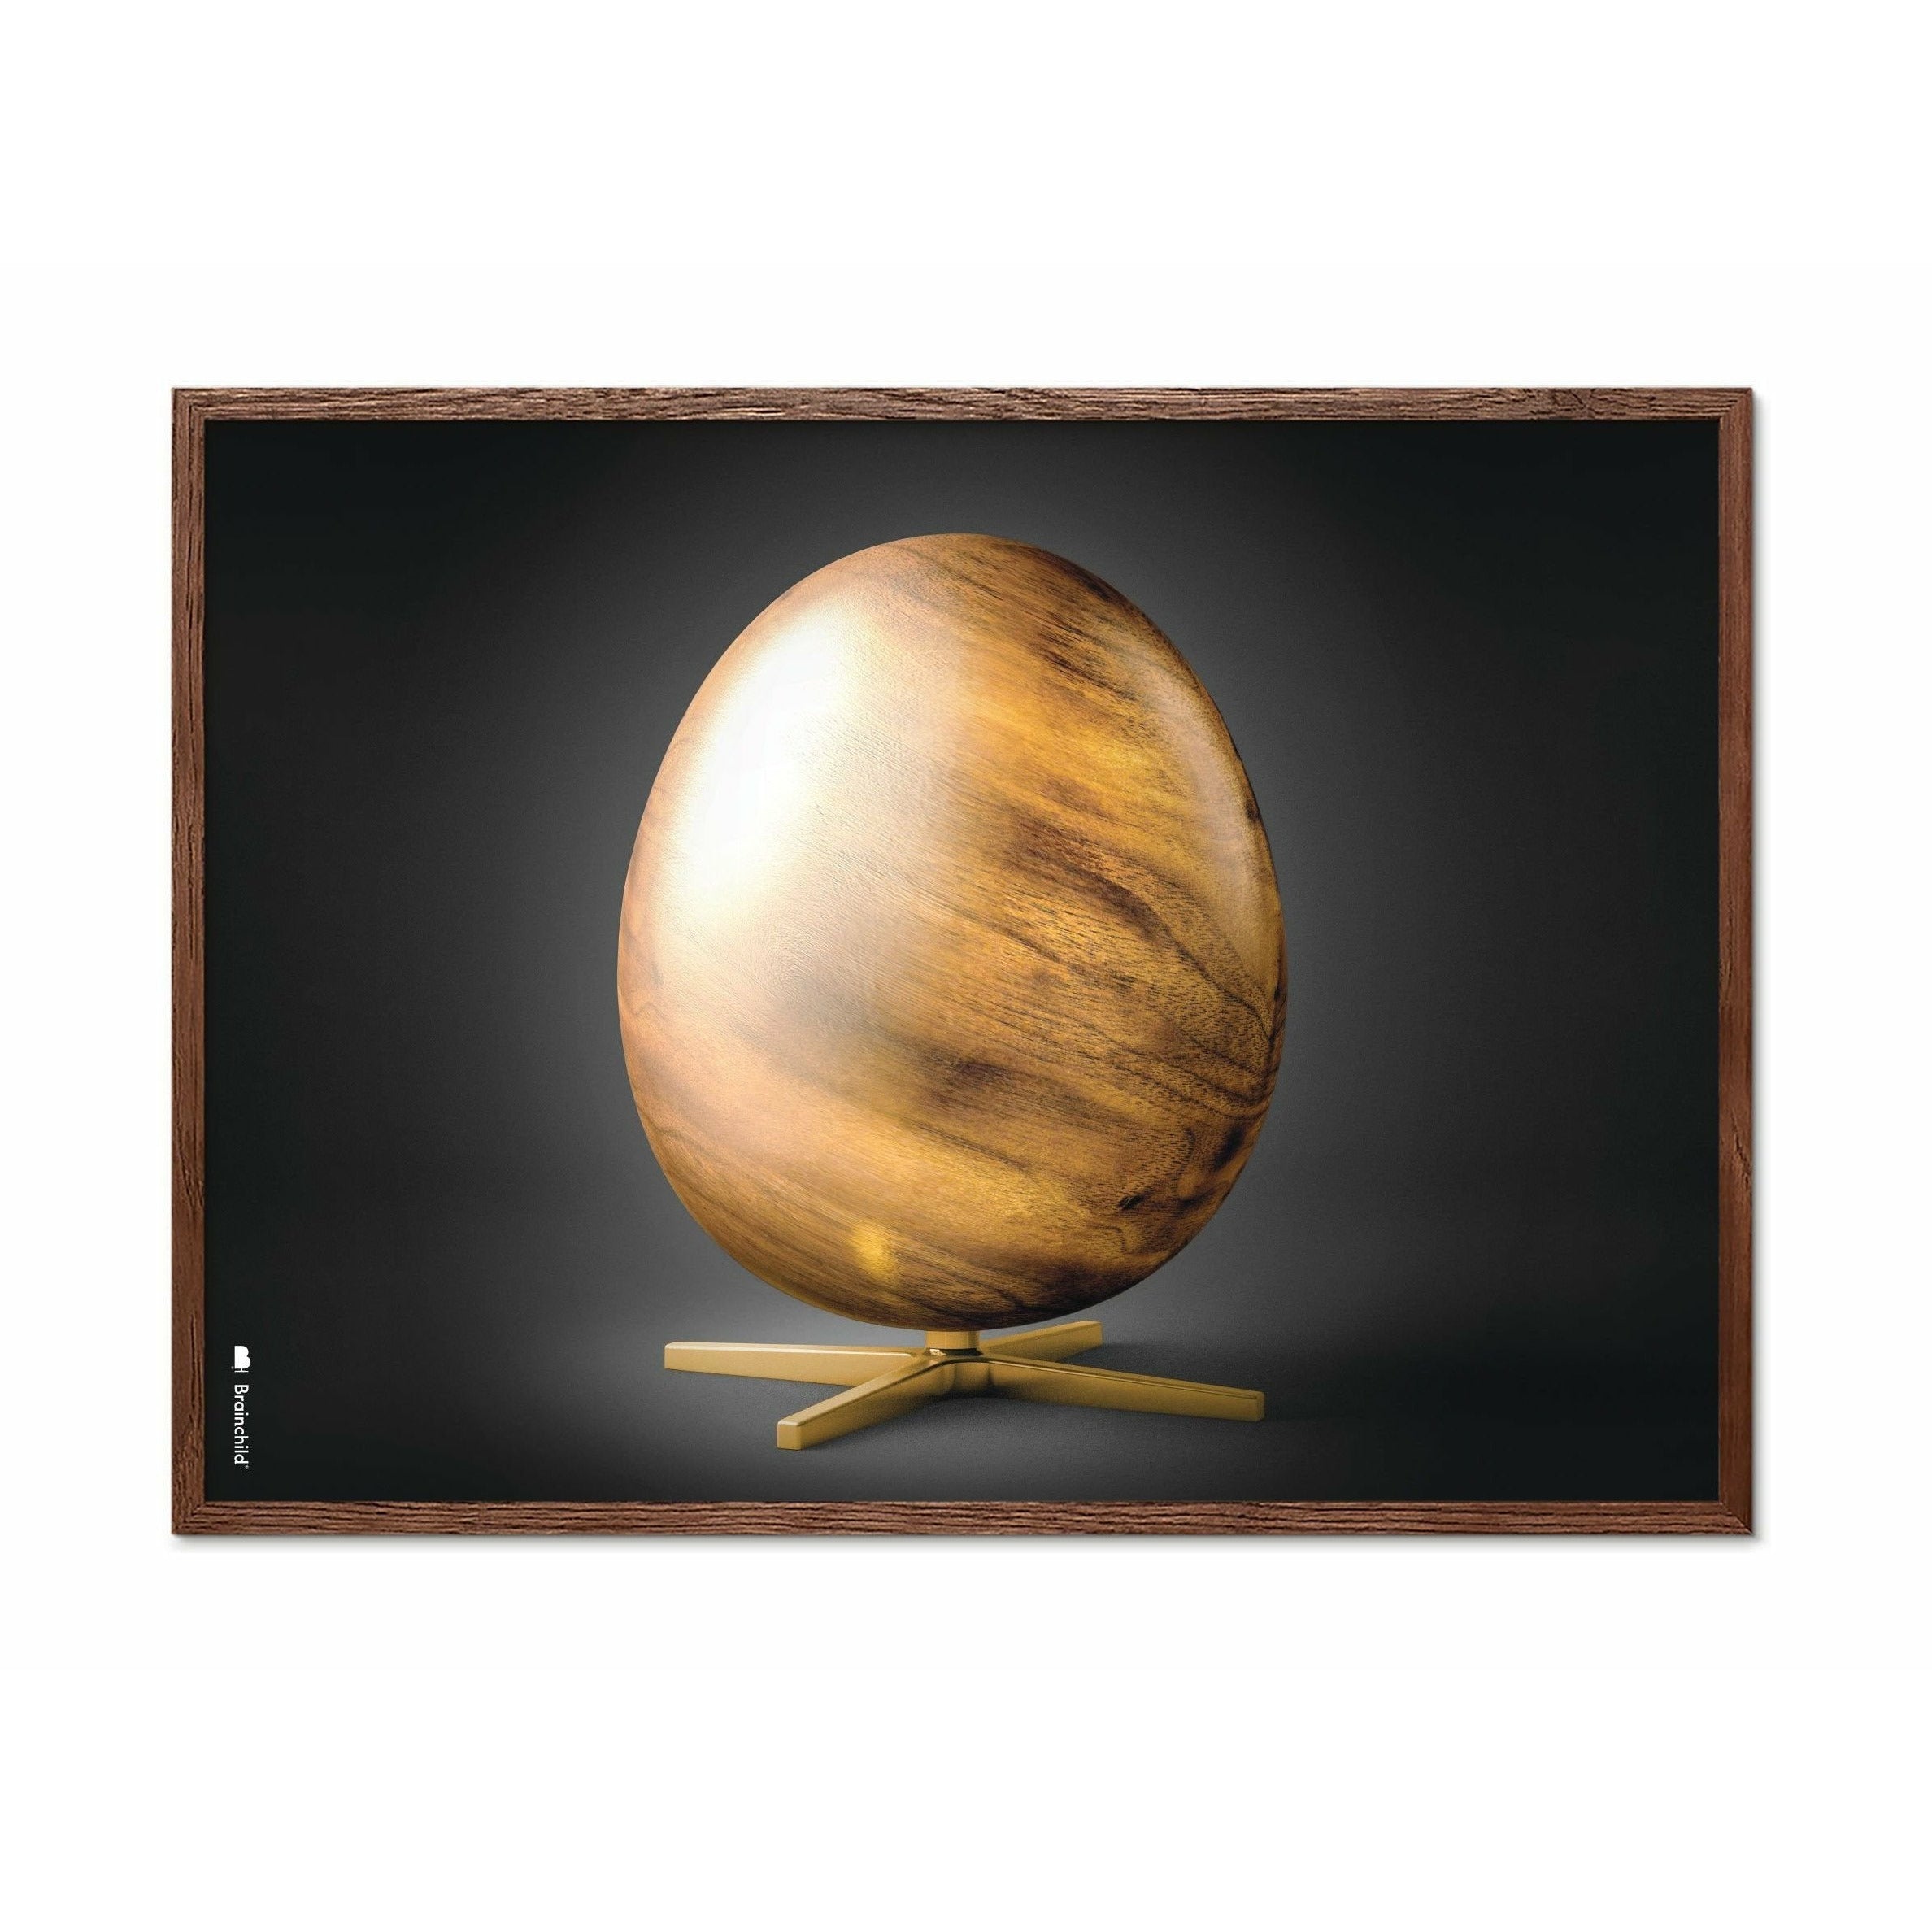 Brainchild Egg Cross Format Poster, Frame Made Of Dark Wood 70x100 Cm, Black